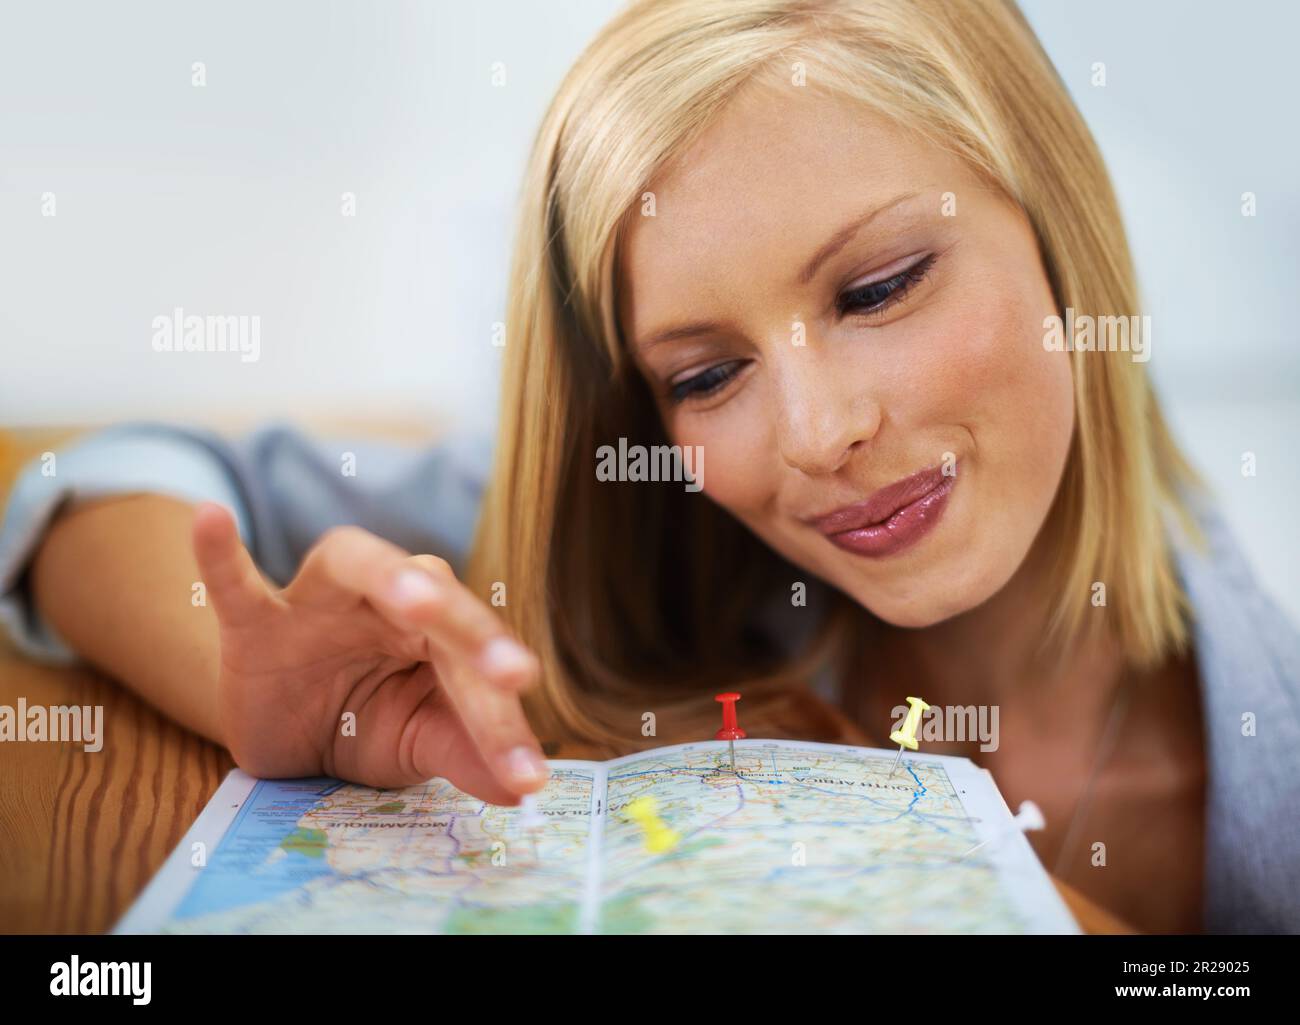 Agenzia di viaggi, mappa pin e volto di una donna felice, consulente o dipendente che pianifica la località di vacanza. Agente turistico, servizio di viaggio e sorriso per le persone Foto Stock